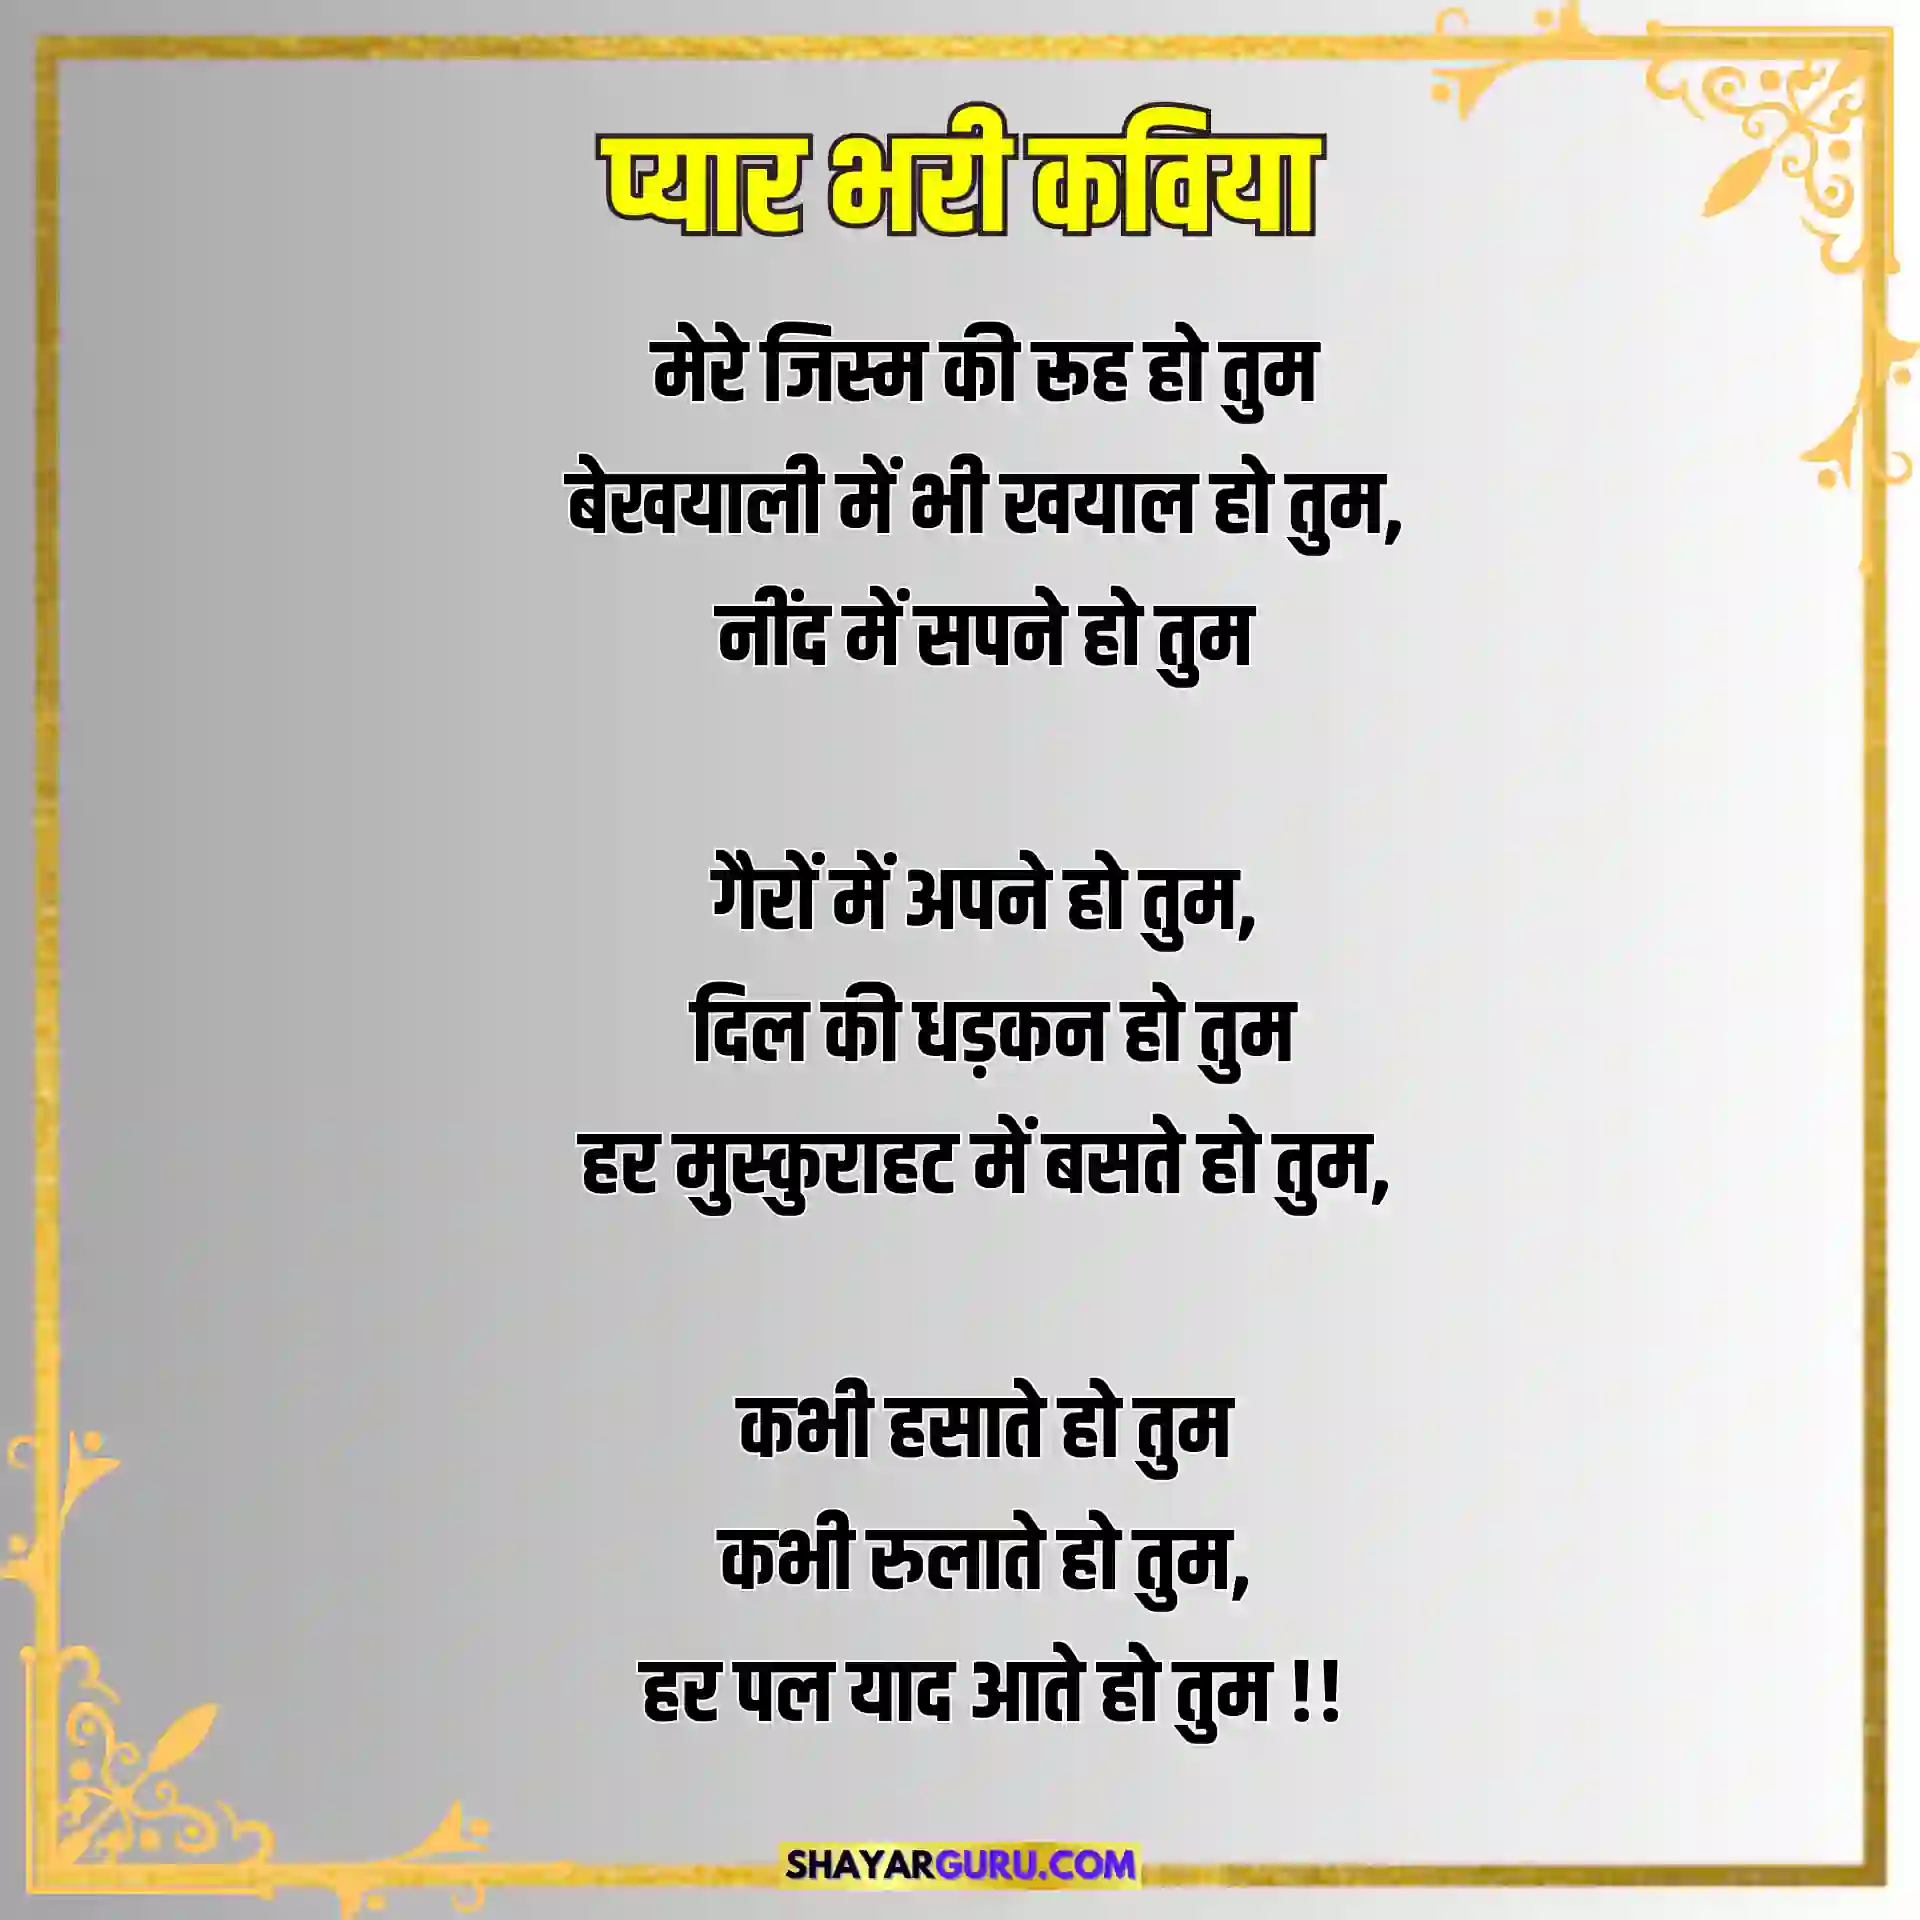 Love Poem Hindi